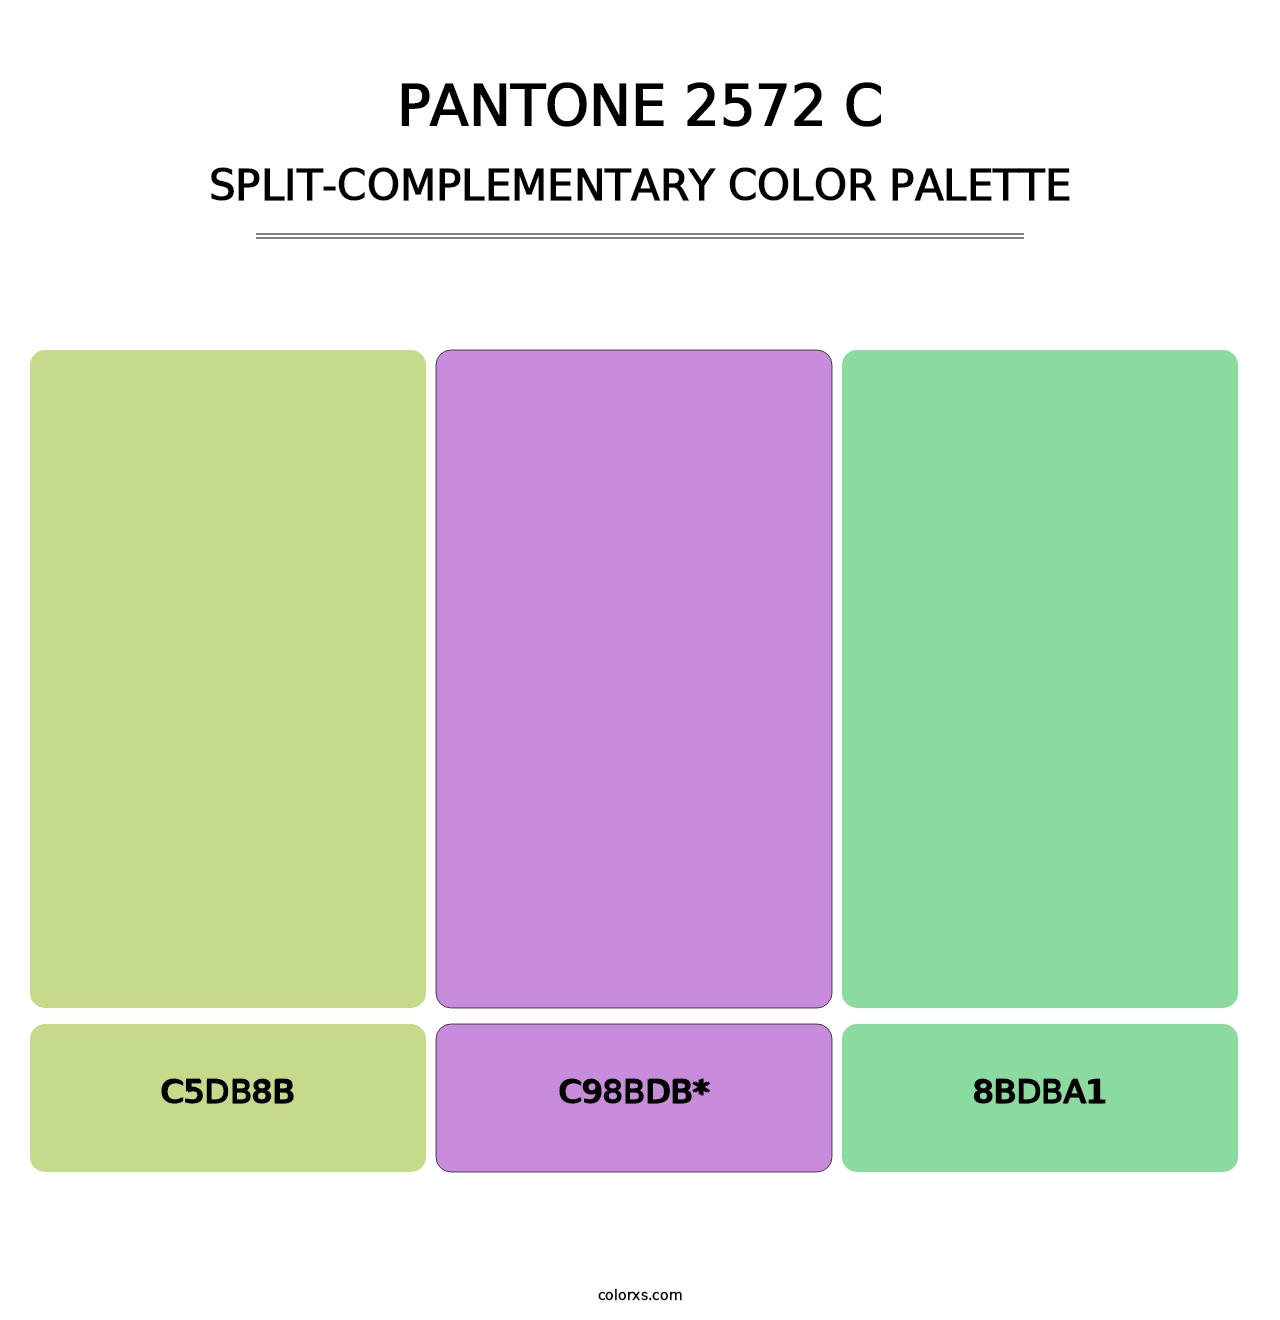 PANTONE 2572 C - Split-Complementary Color Palette